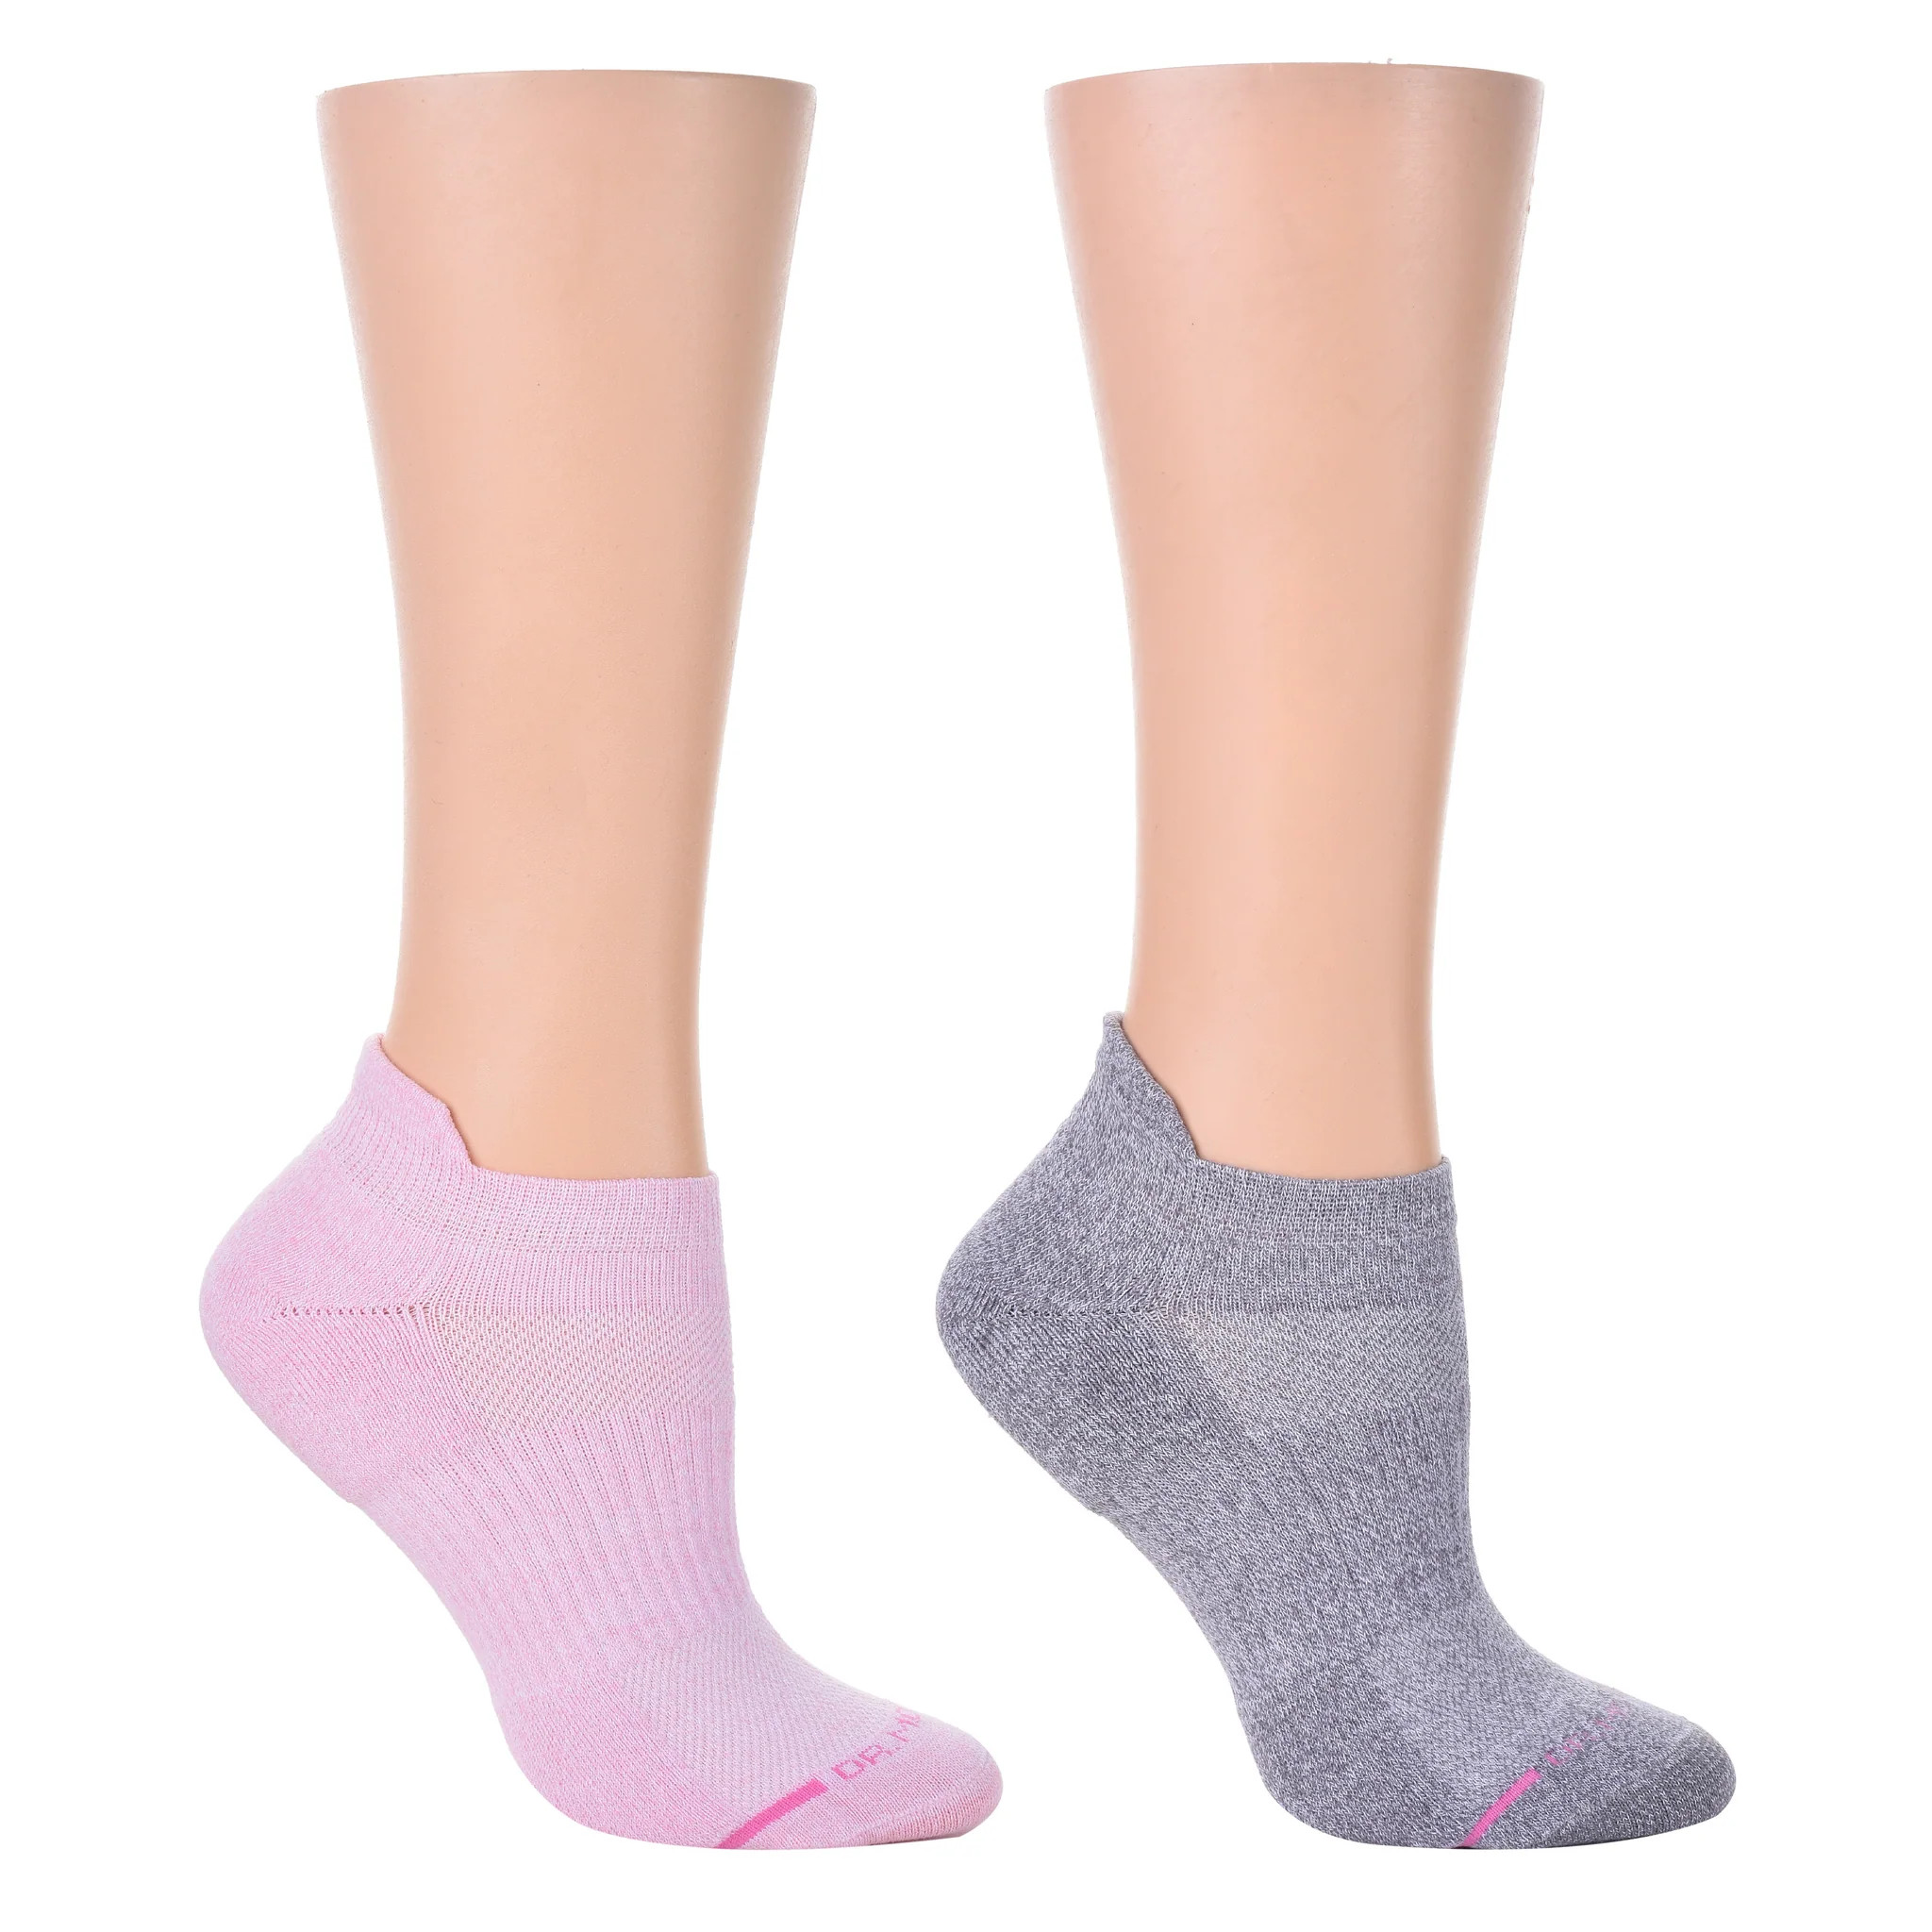 Basic Marl | Ankle Compression Socks For Women | Dr. Motion